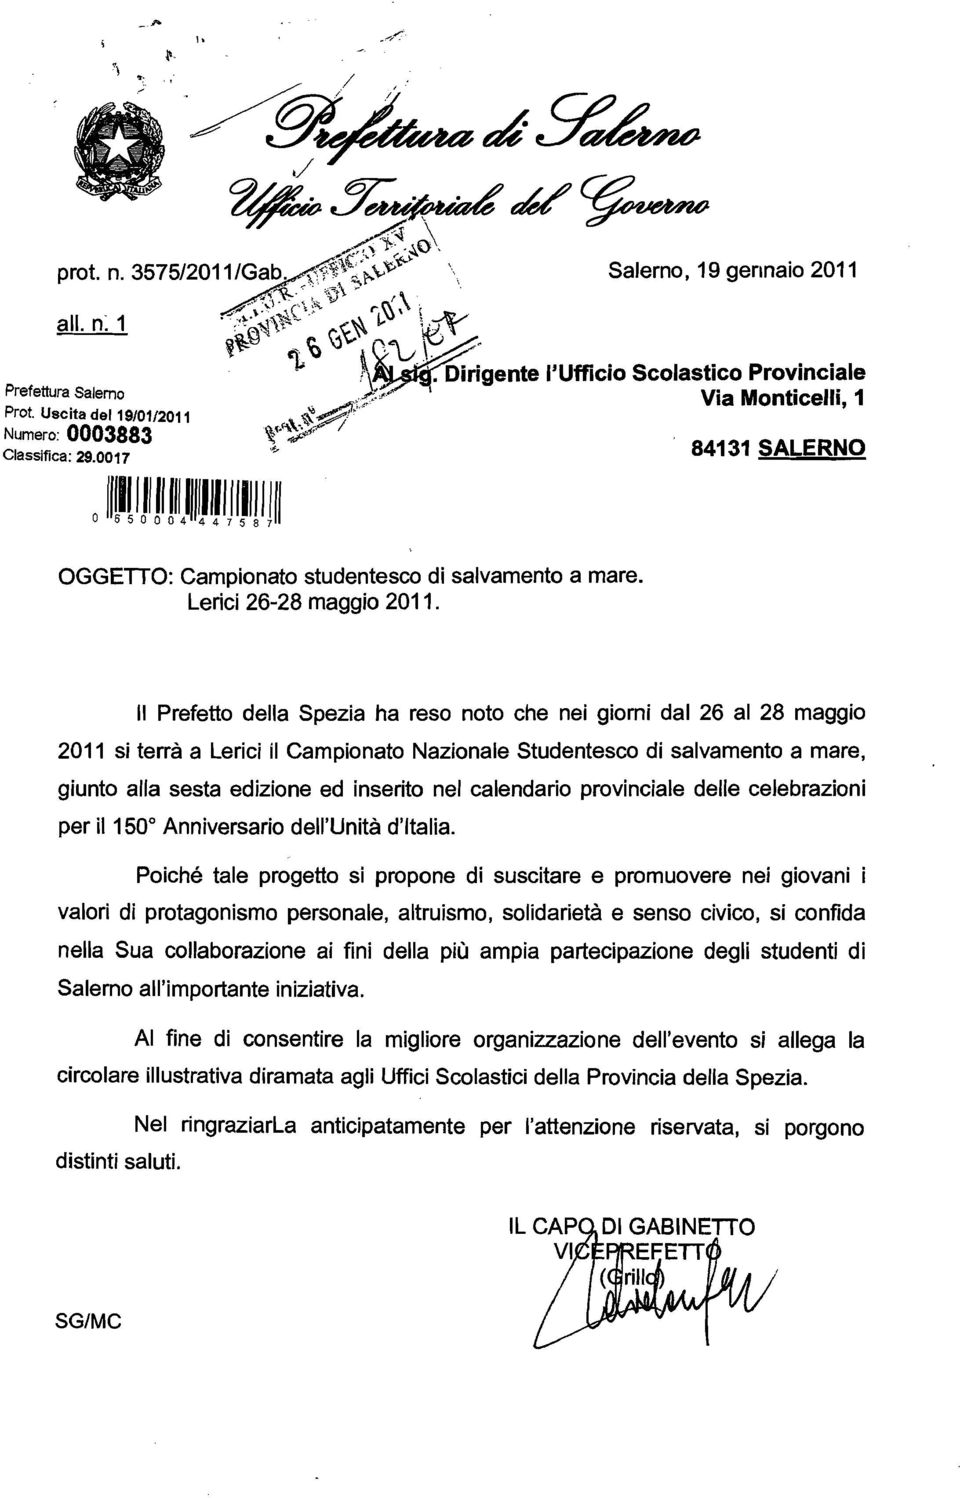 Il Prefetto della Spezia ha reso noto che nei giorni dal 26 al 28 maggio 2011 si terrà a Lerici il Campionato Nazionale Studentesco di salvamento a mare, giunto alla sesta edizione ed inserito nel